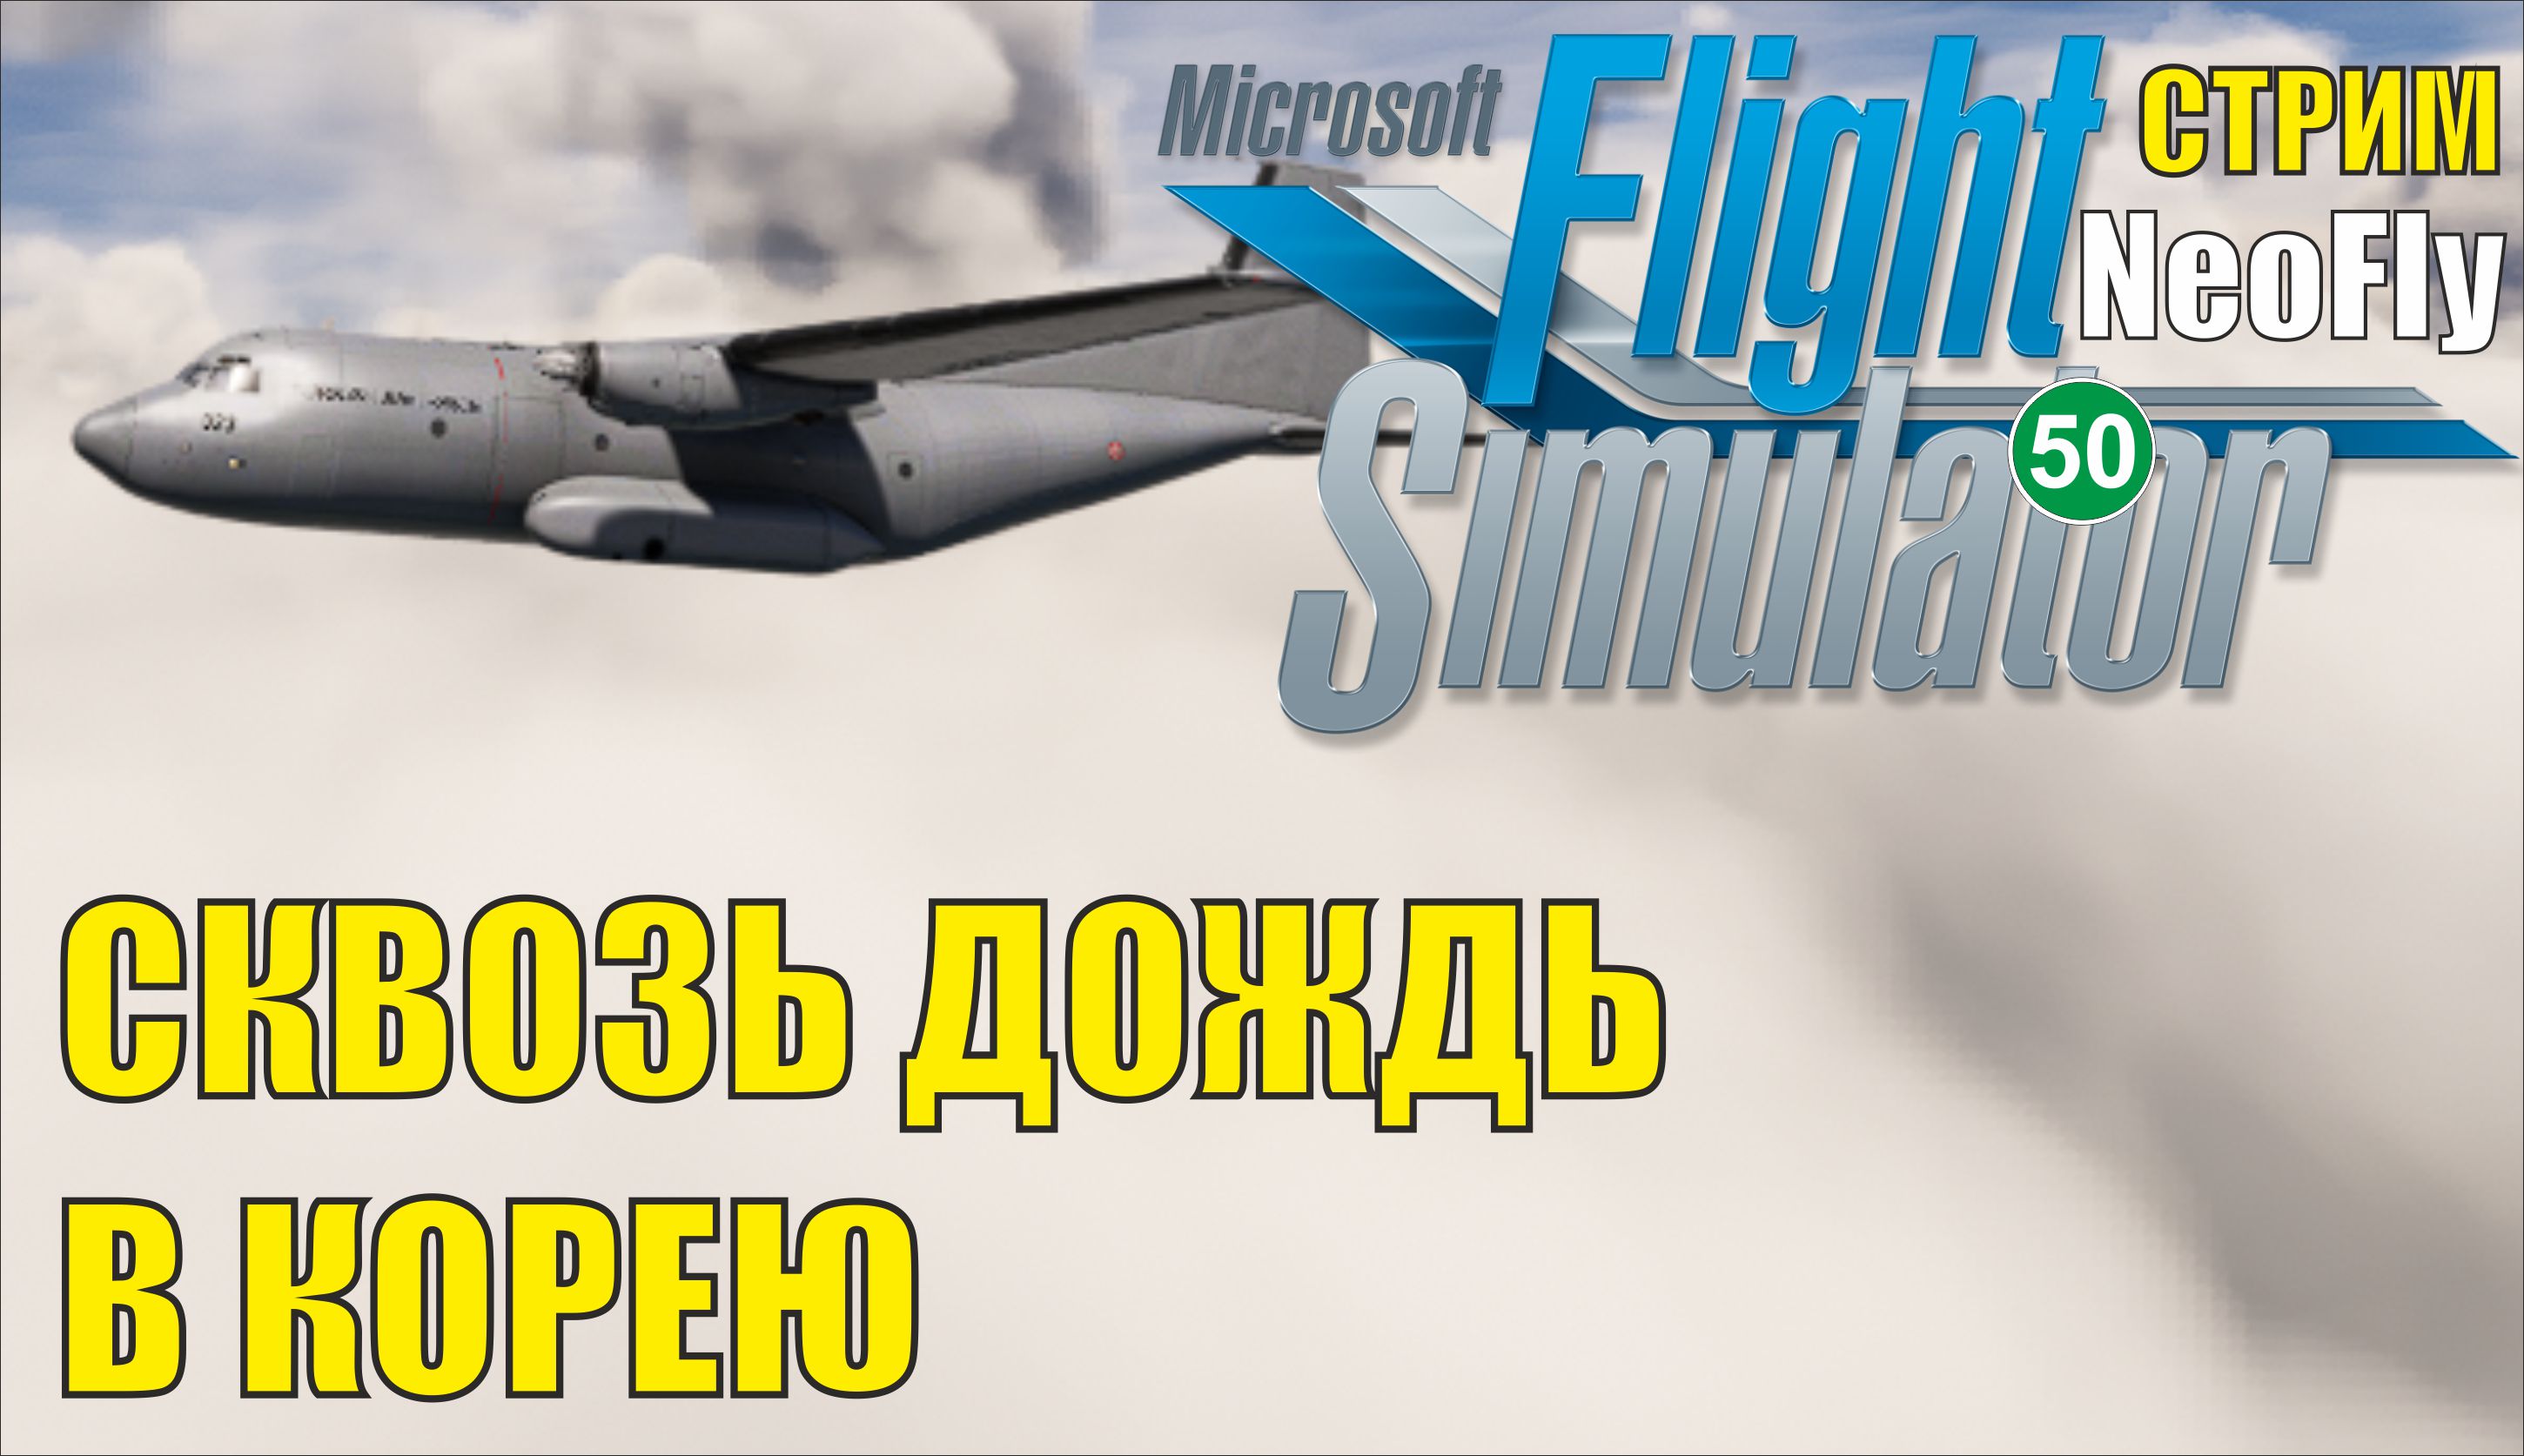 Microsoft Flight Simulator 2020 (NeoFly) - Сквозь дождь в Корею